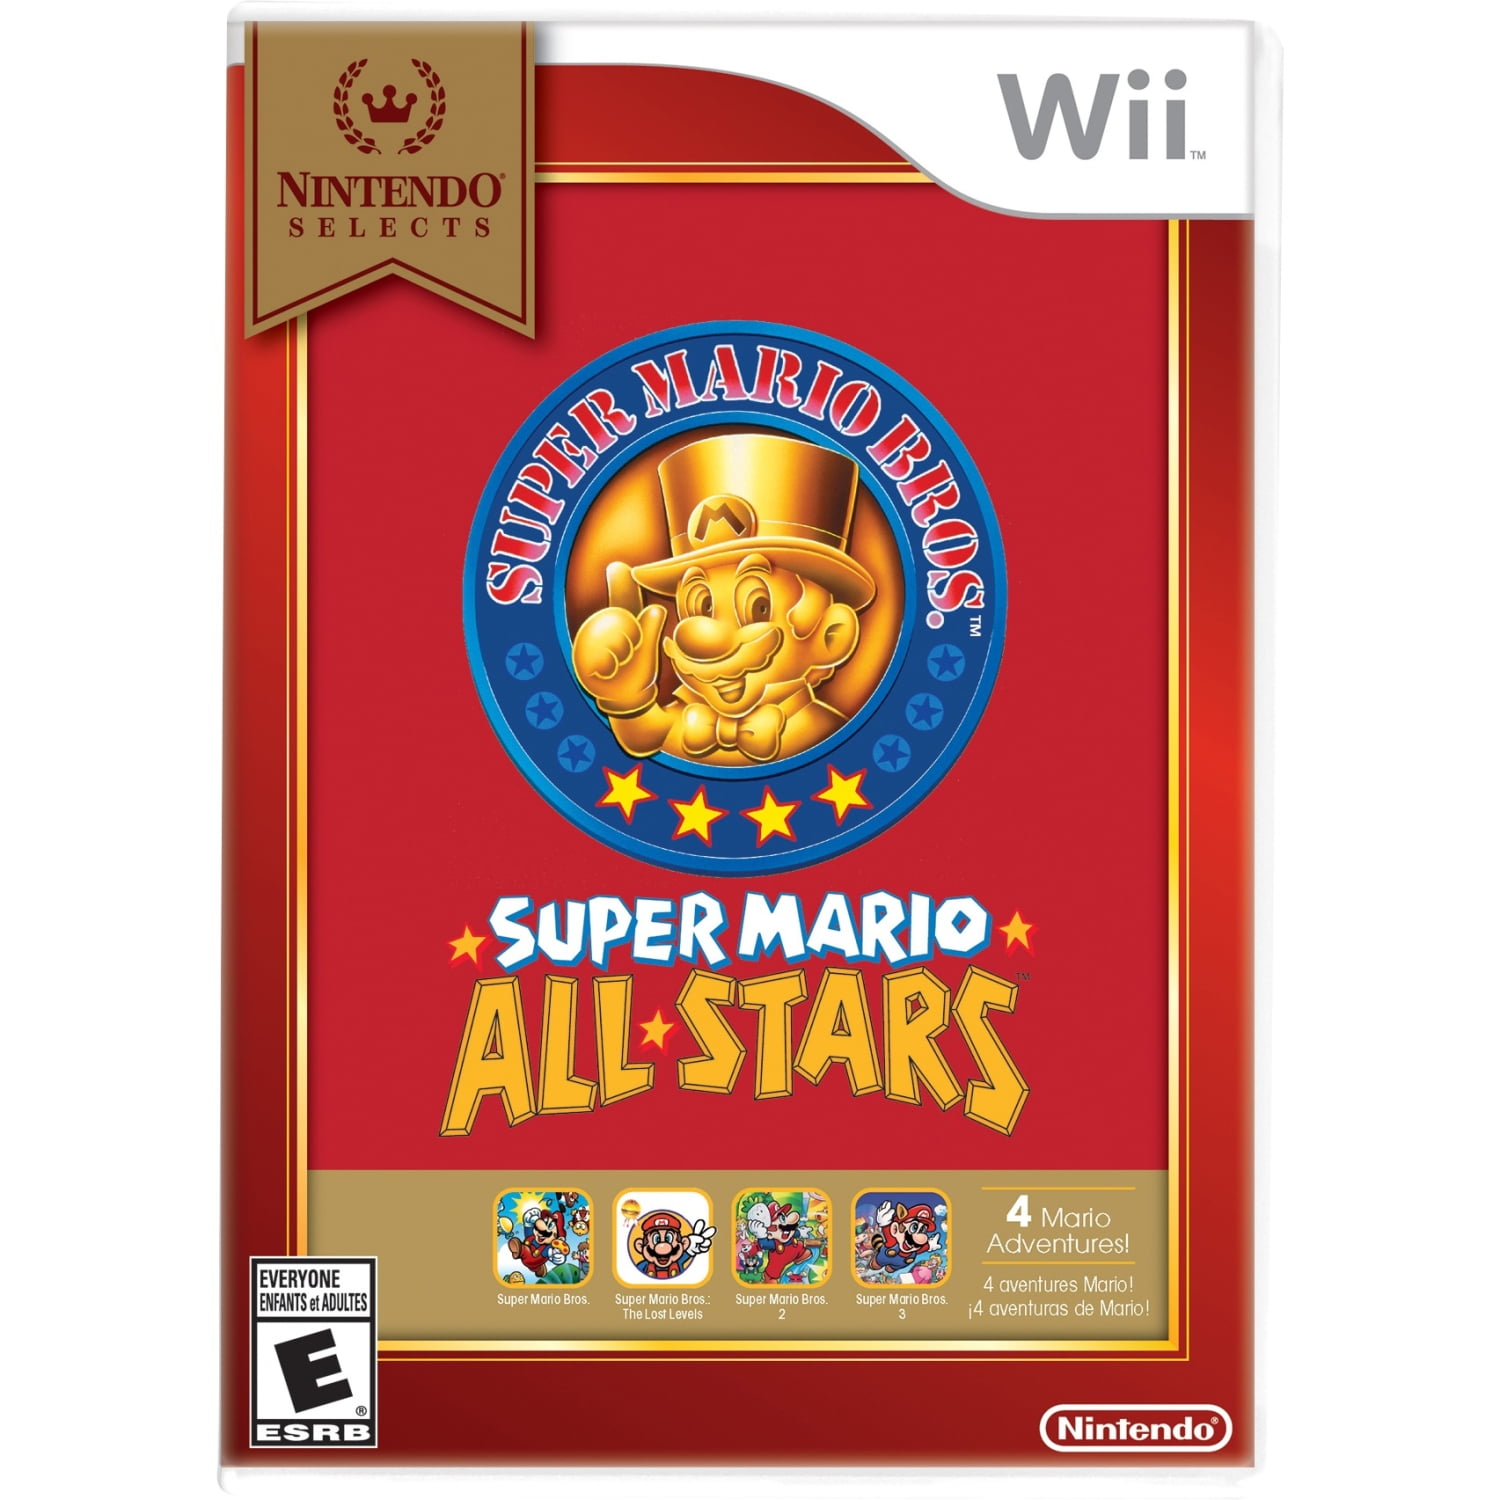 Getalenteerd Referendum Mededogen Nintendo Selects: Super Mario All-Stars, Nintendo, Nintendo Wii,  045496904197 - Walmart.com